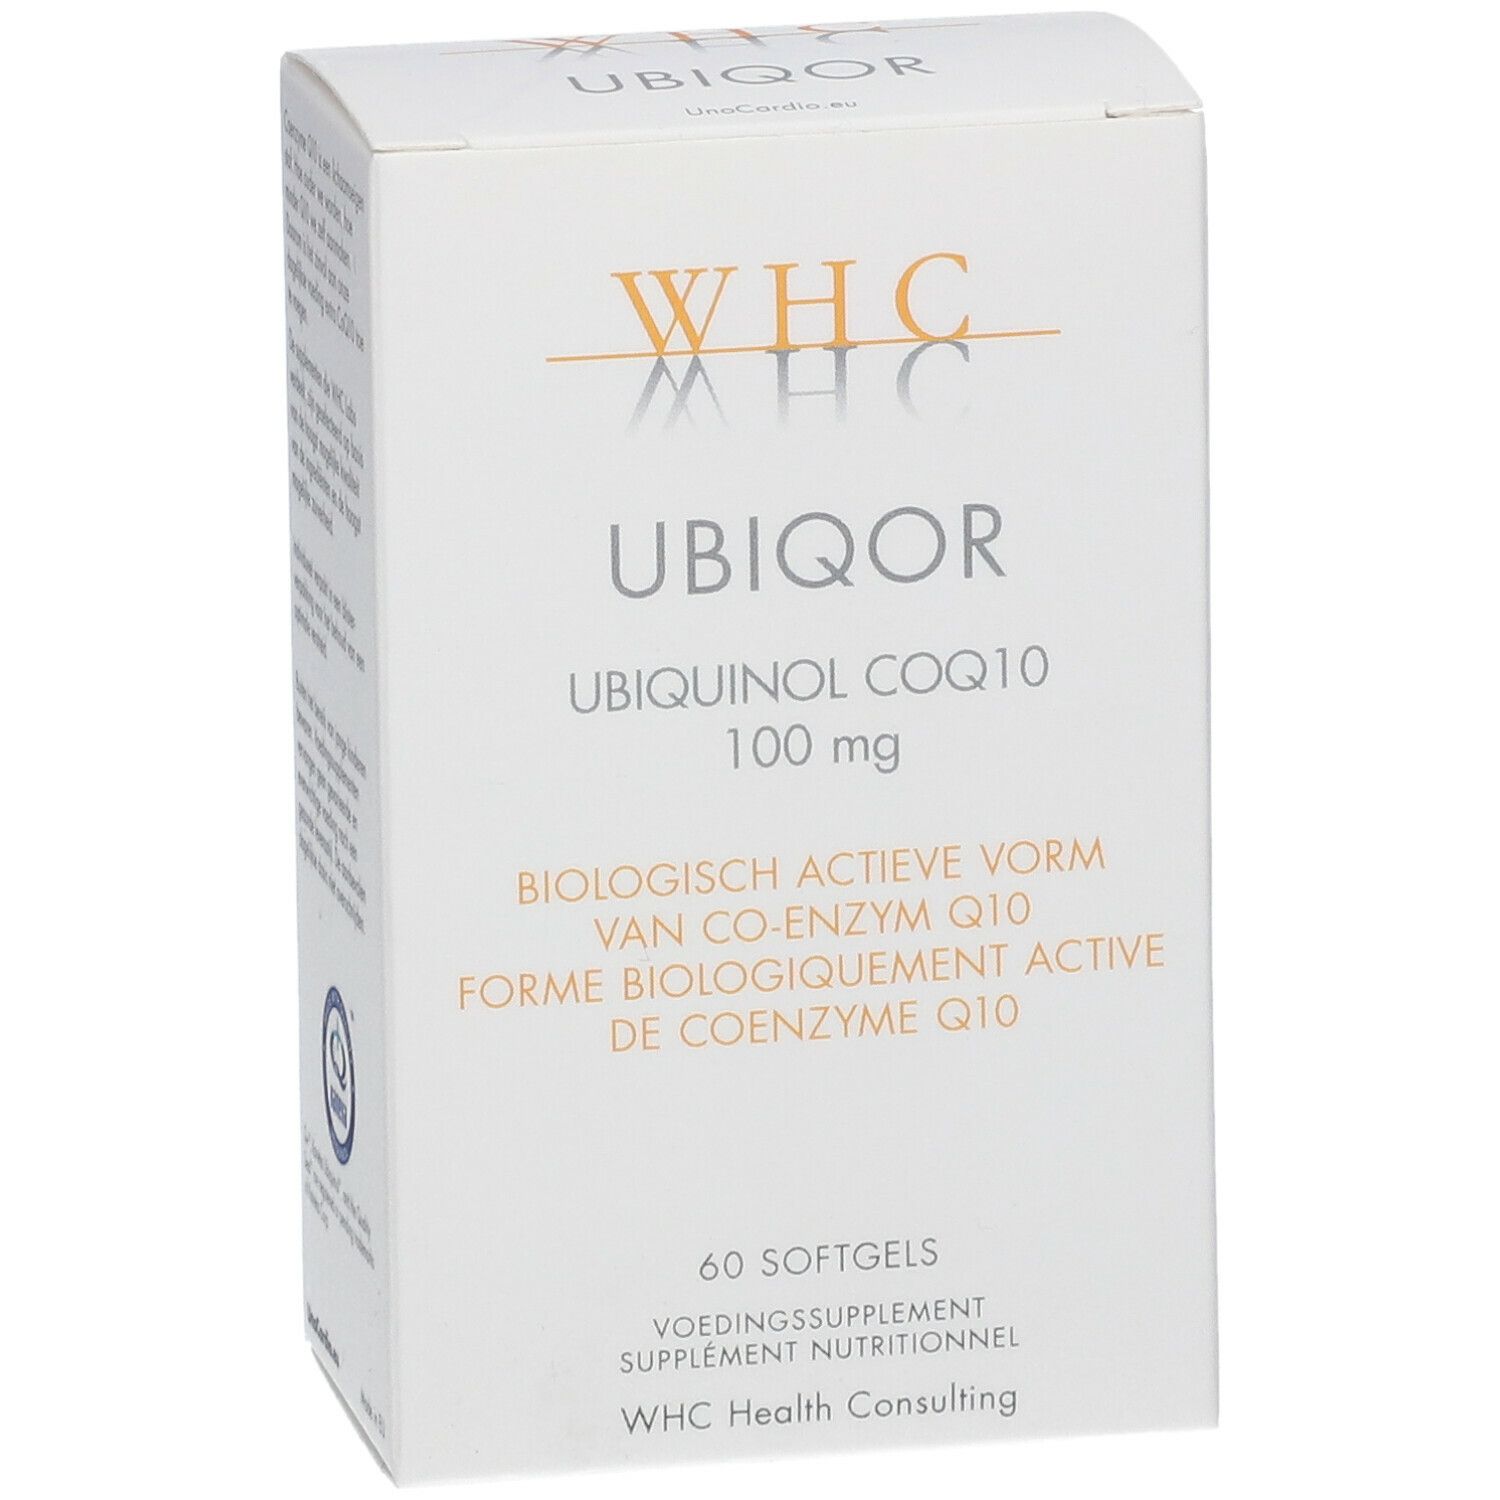 WHC Ubiqor® Ubiquinol CoQ10 100 mg